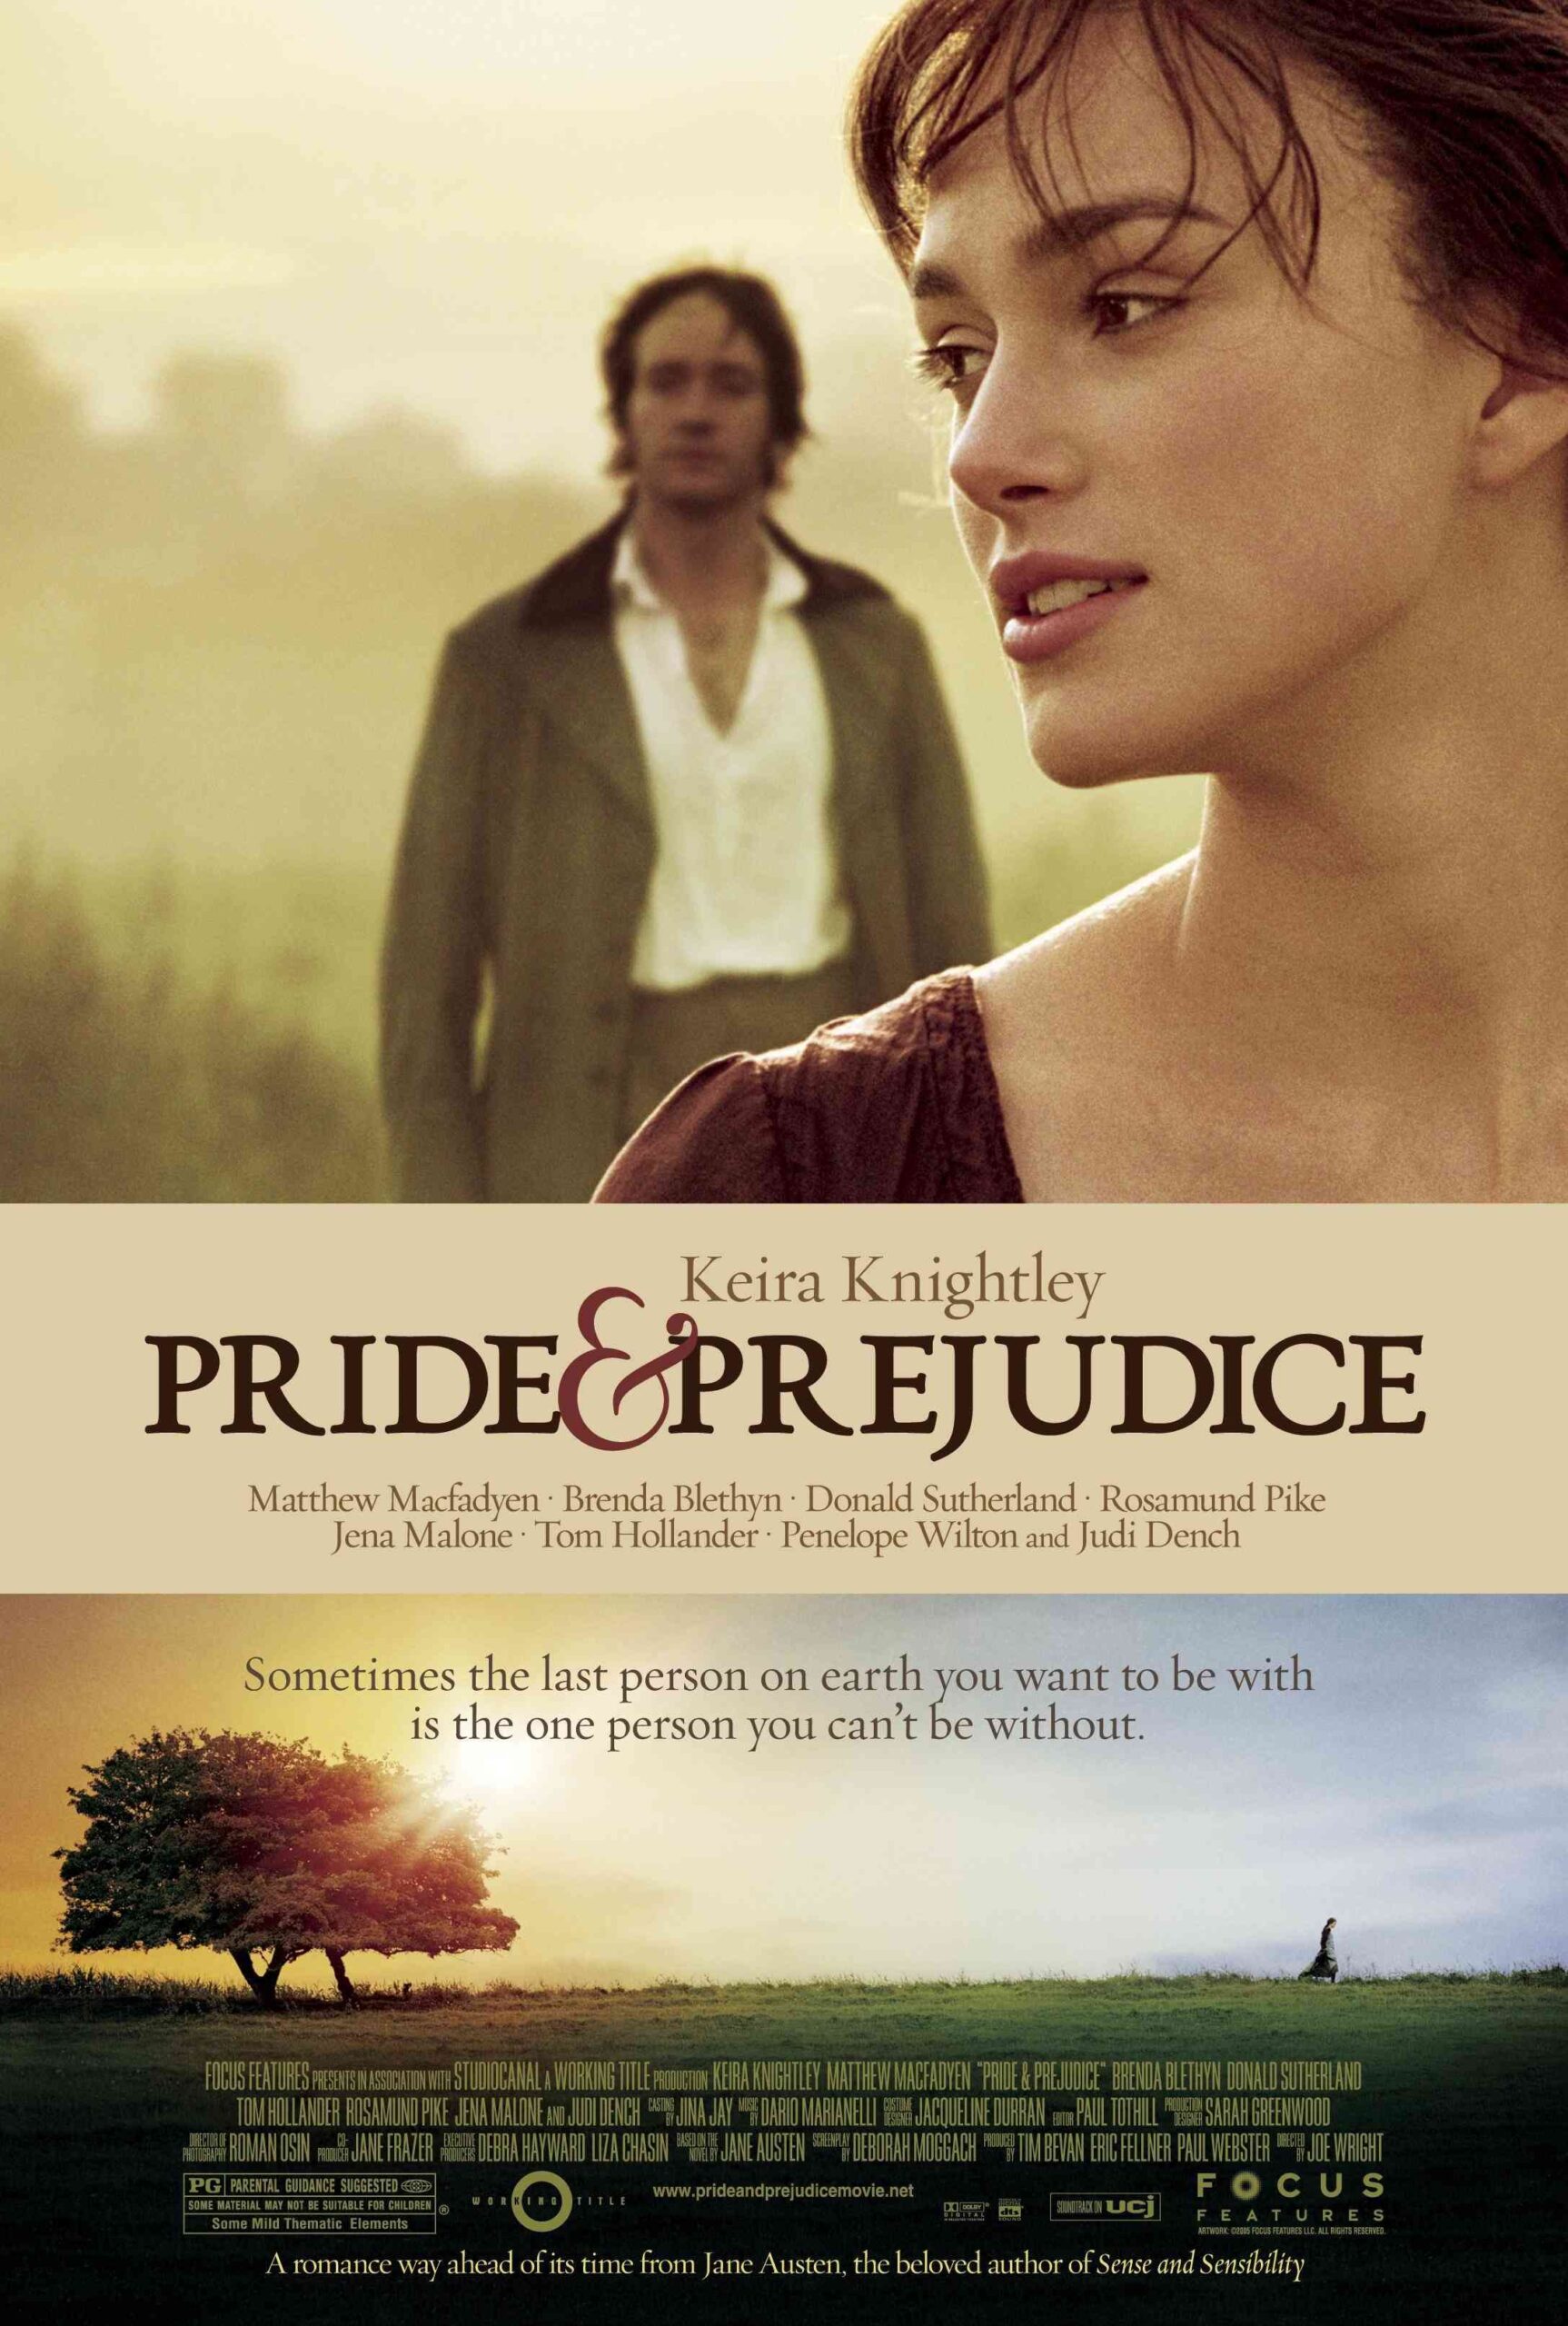 FULL MOVIE: Pride and Prejudice (2005)